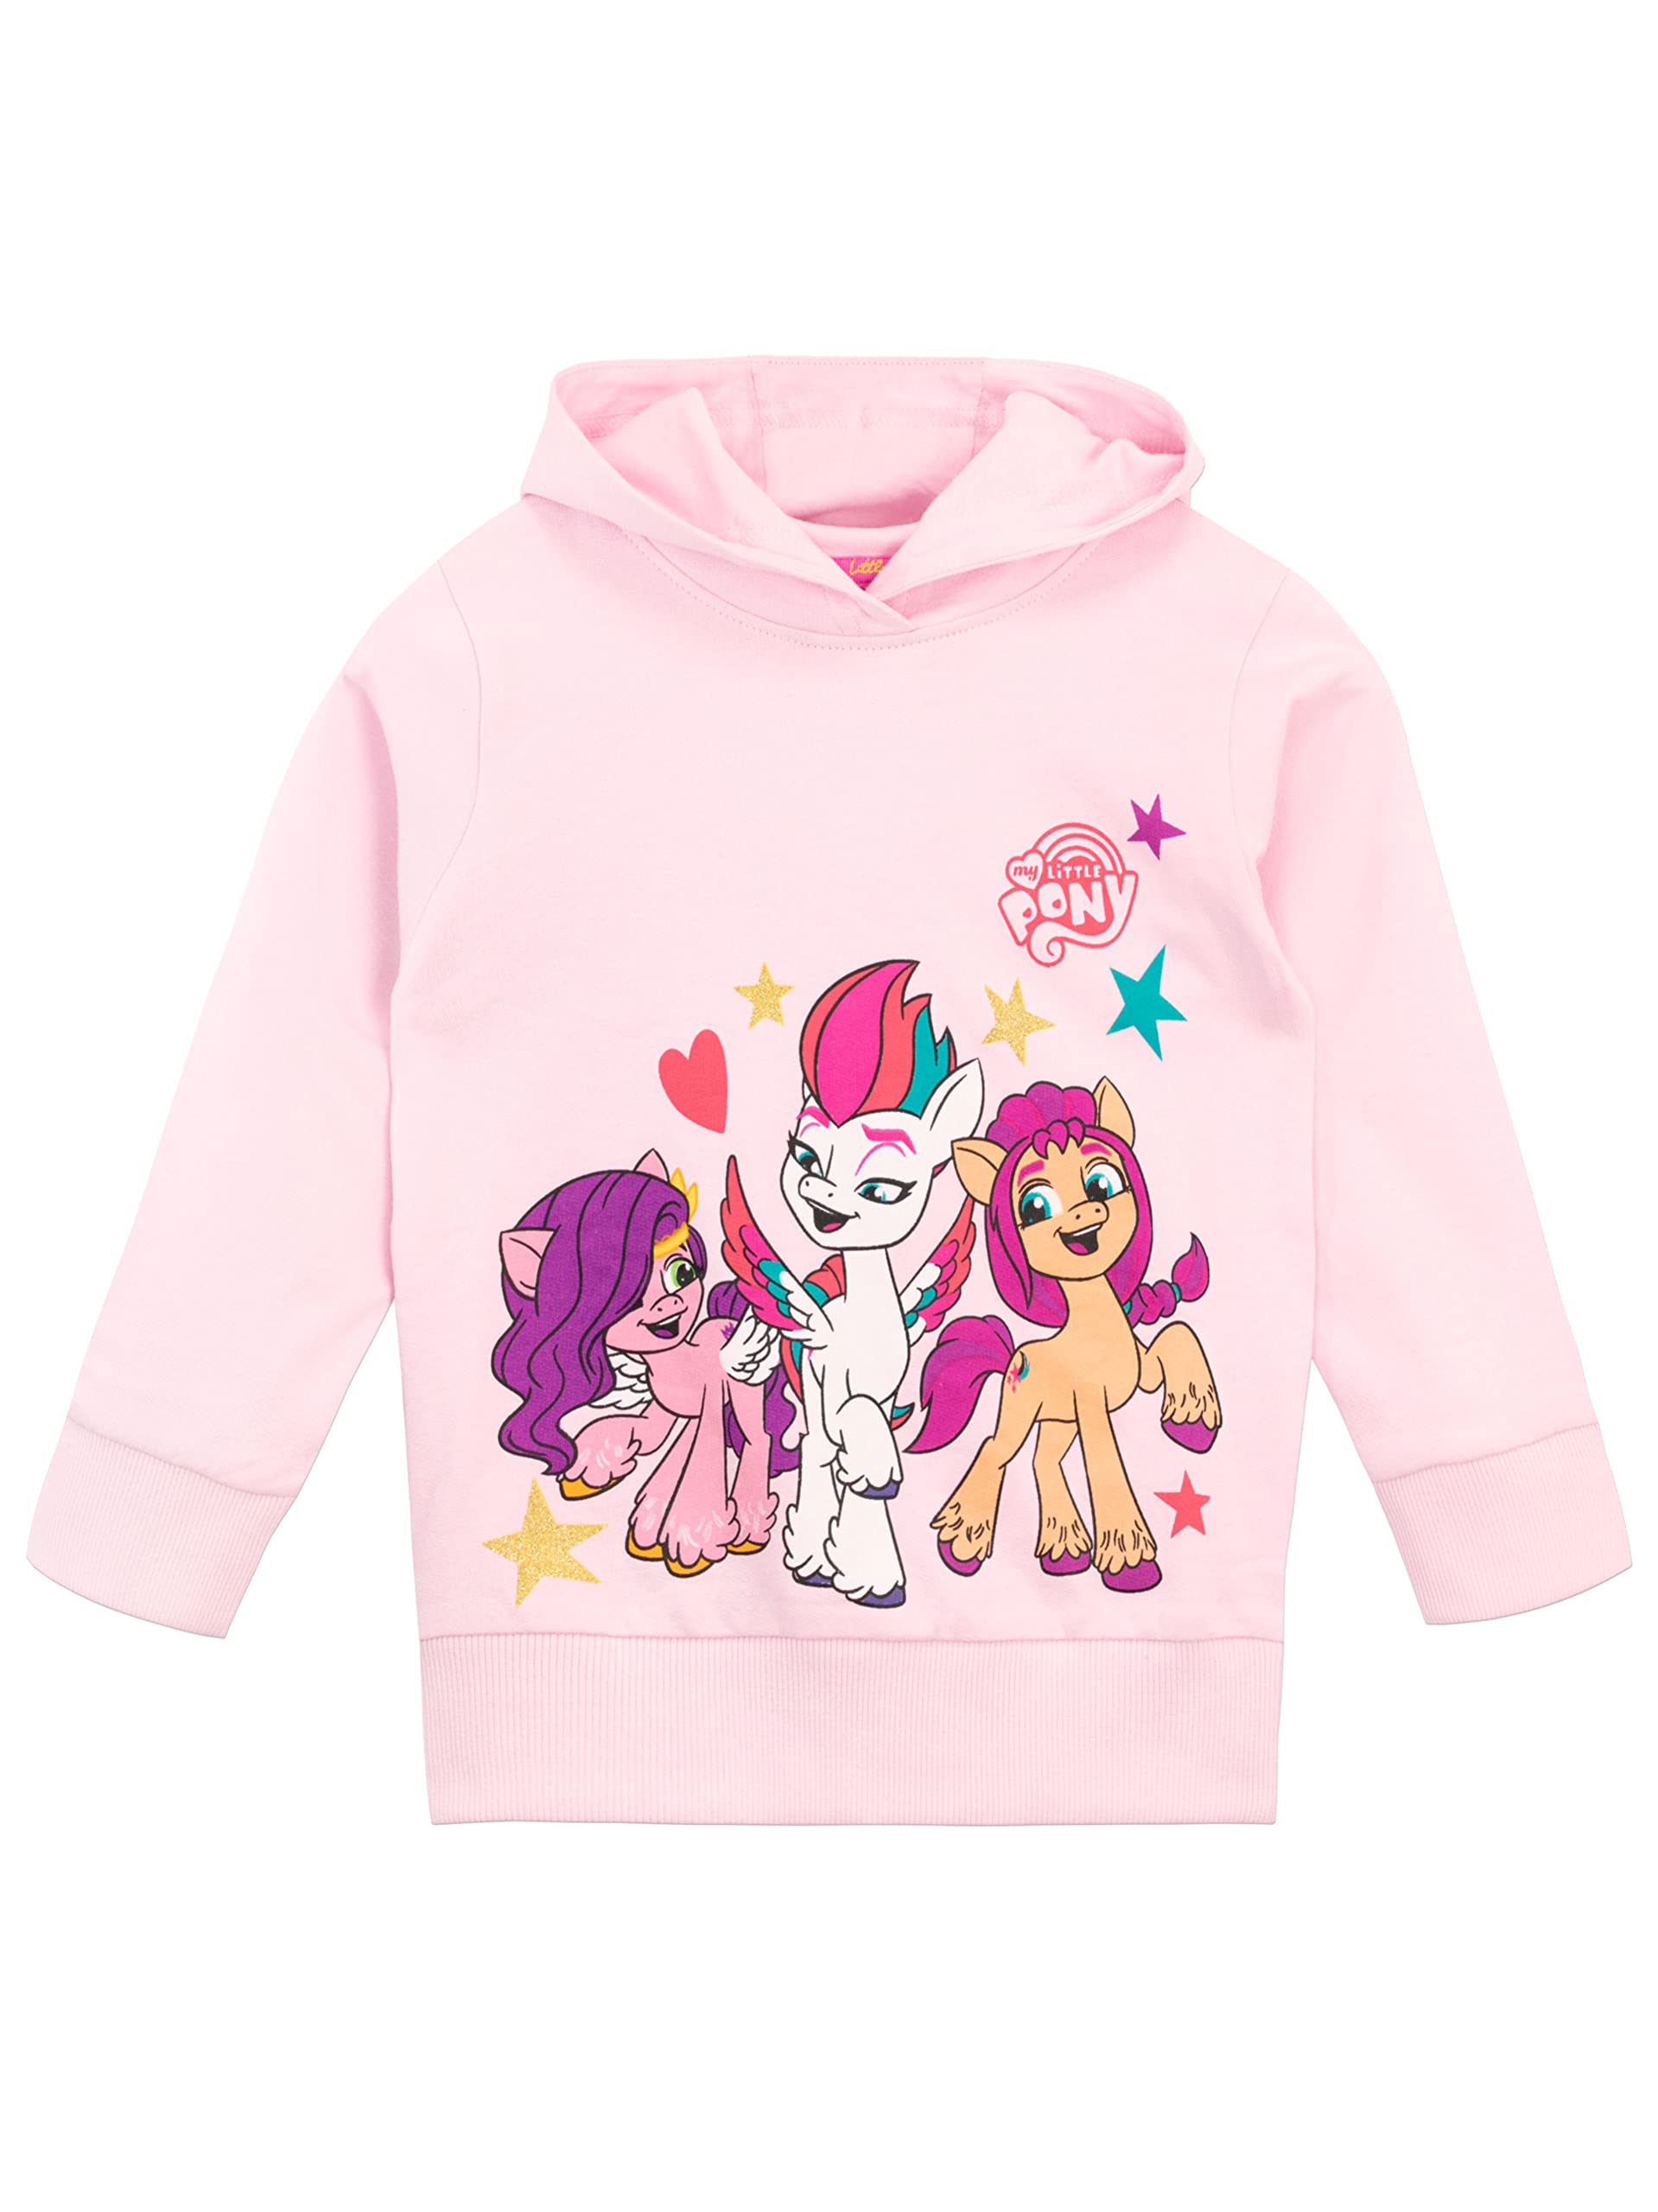 My Little Pony Girls' Sweatshirt